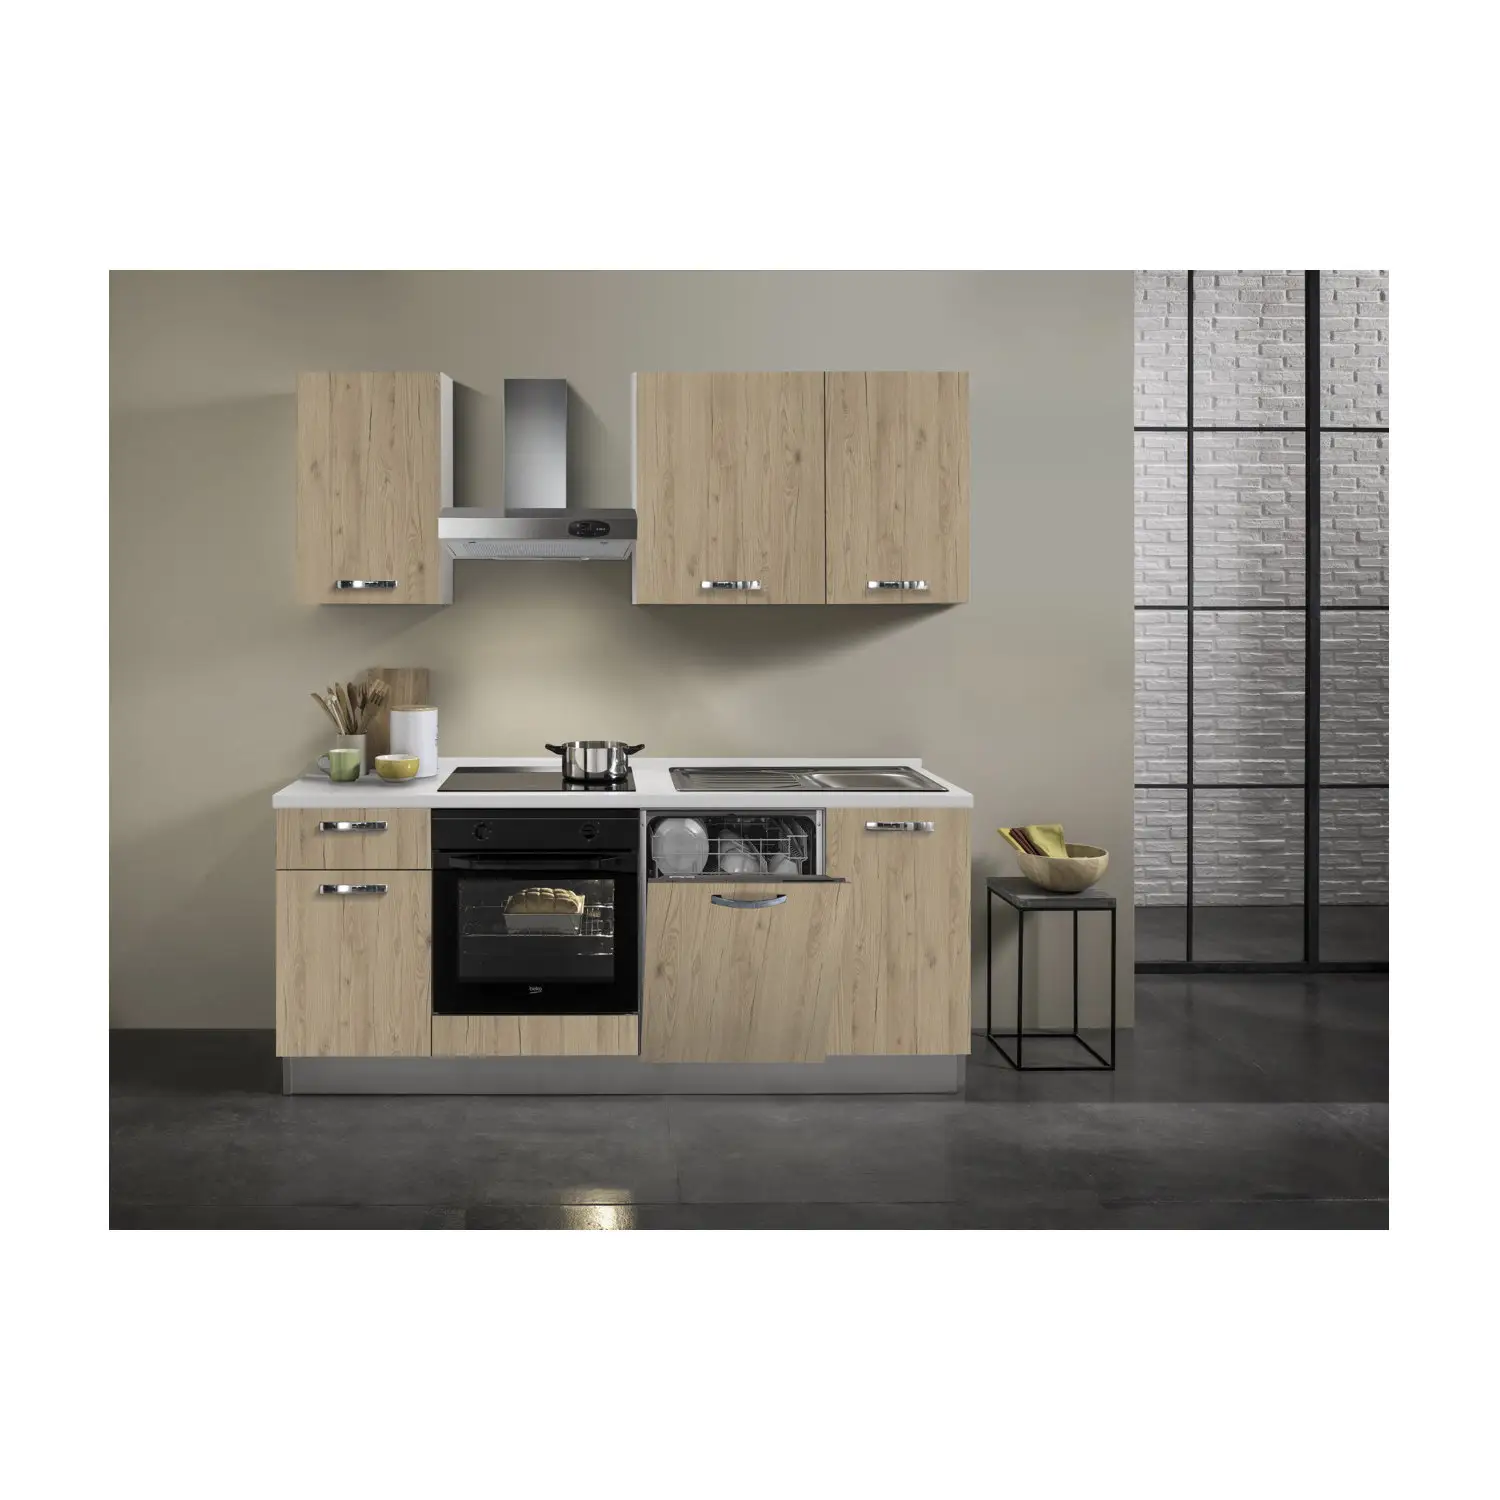 Üst tedarikçi önceden monte edilmiş mutfak mobilyası-tezgah, ev aletleri ve bulaşık makinesi dahil-verimlilik estetiği karşılar